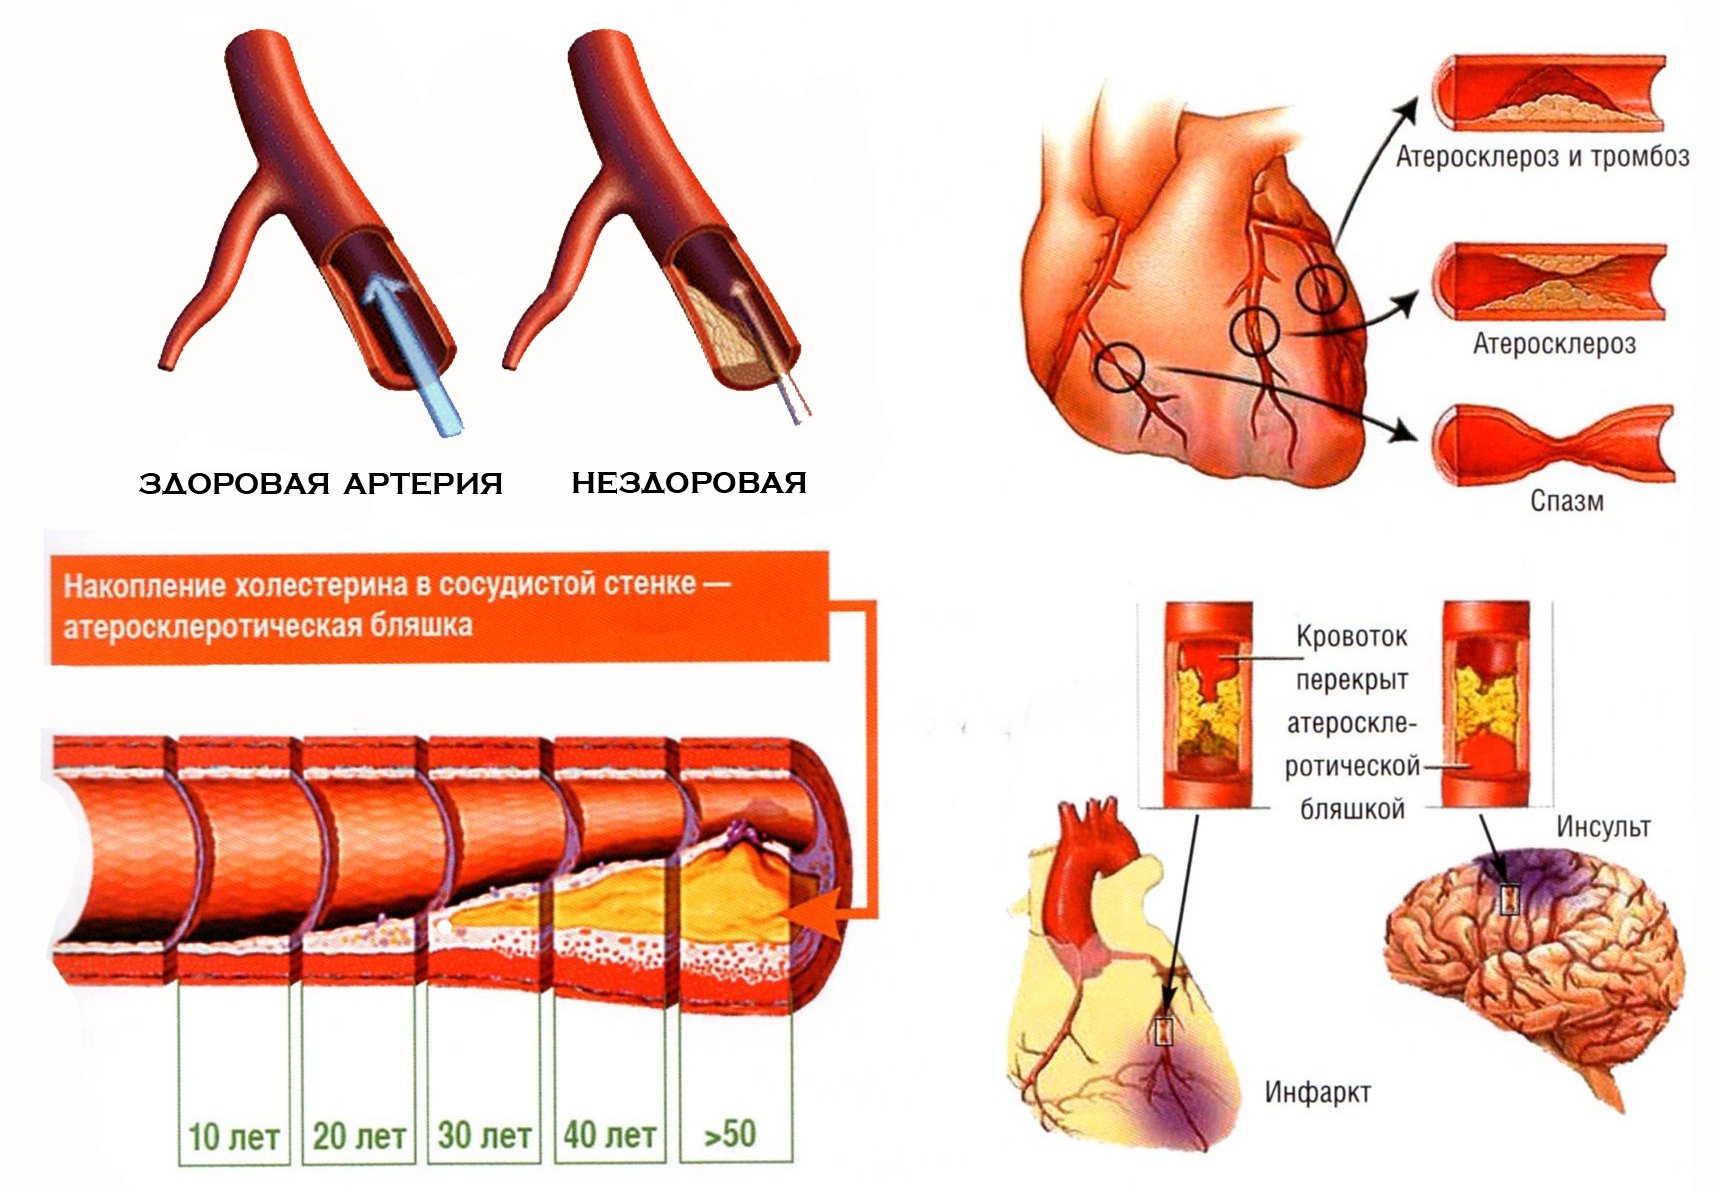 Здоровые и пораженные атеросклерозом артерии. Ангиоклинз борется с атеросклерозом.